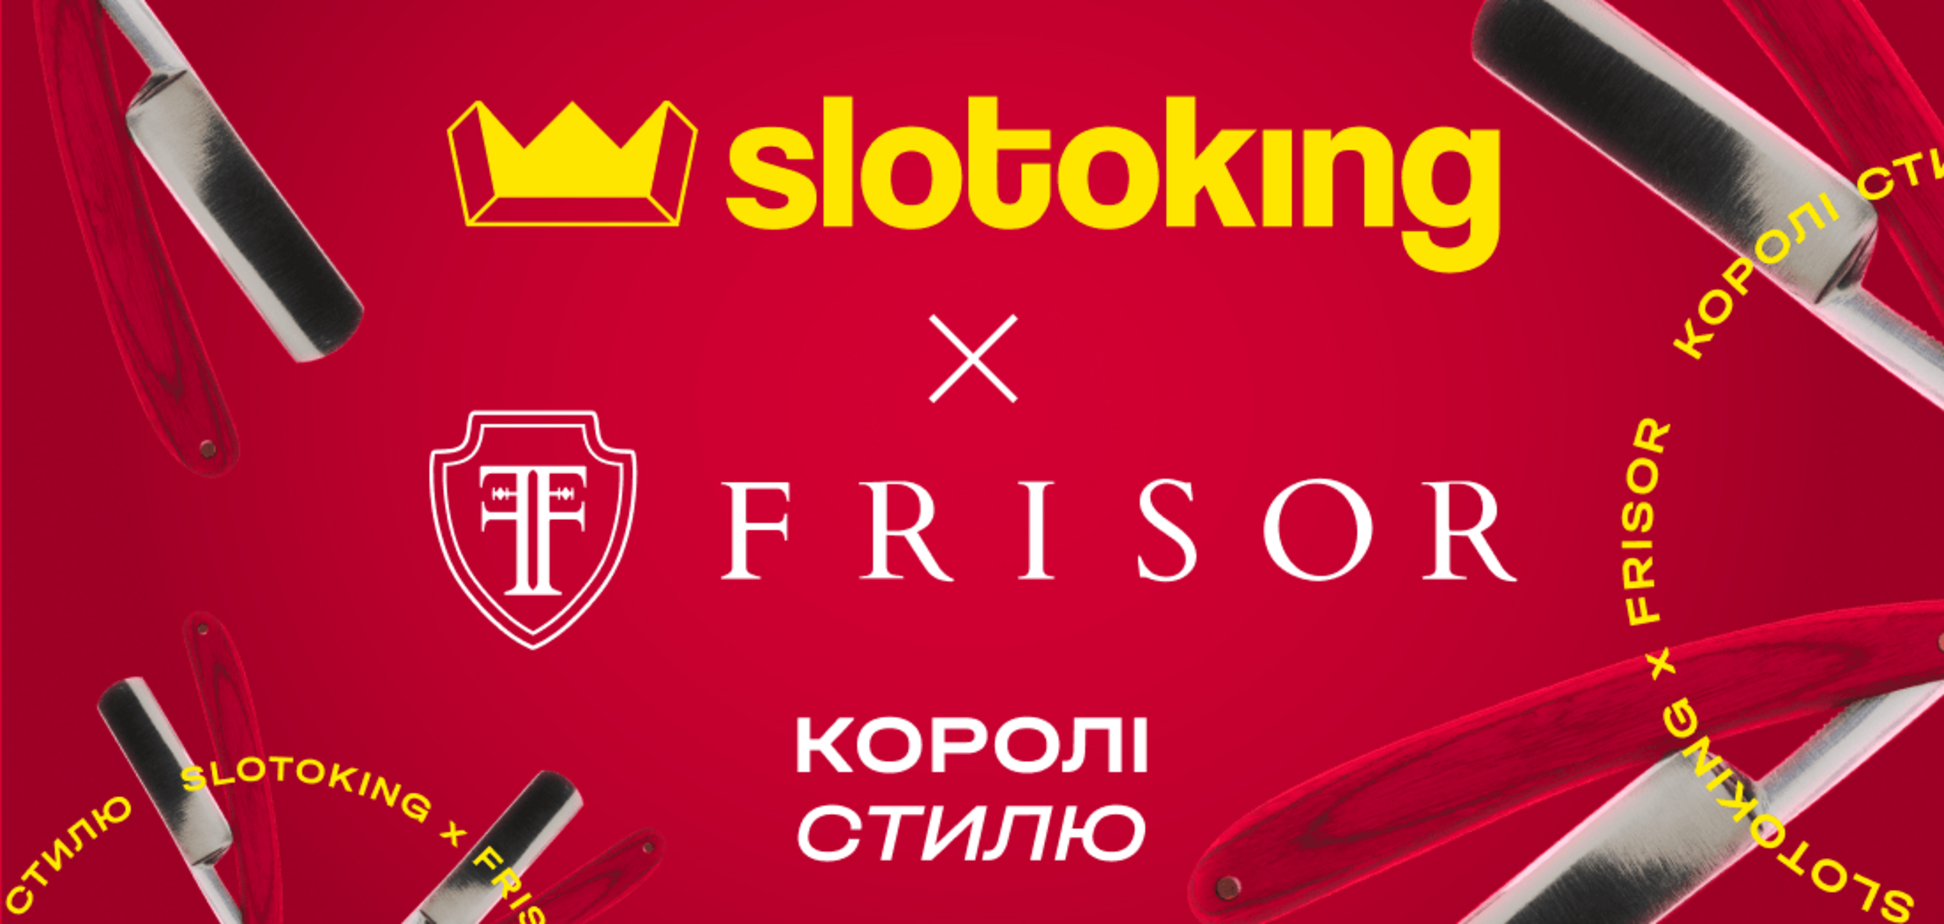 Українське ліцензійне онлайн-казино slotoking розпочало співпрацю з барбершопом Frisor 